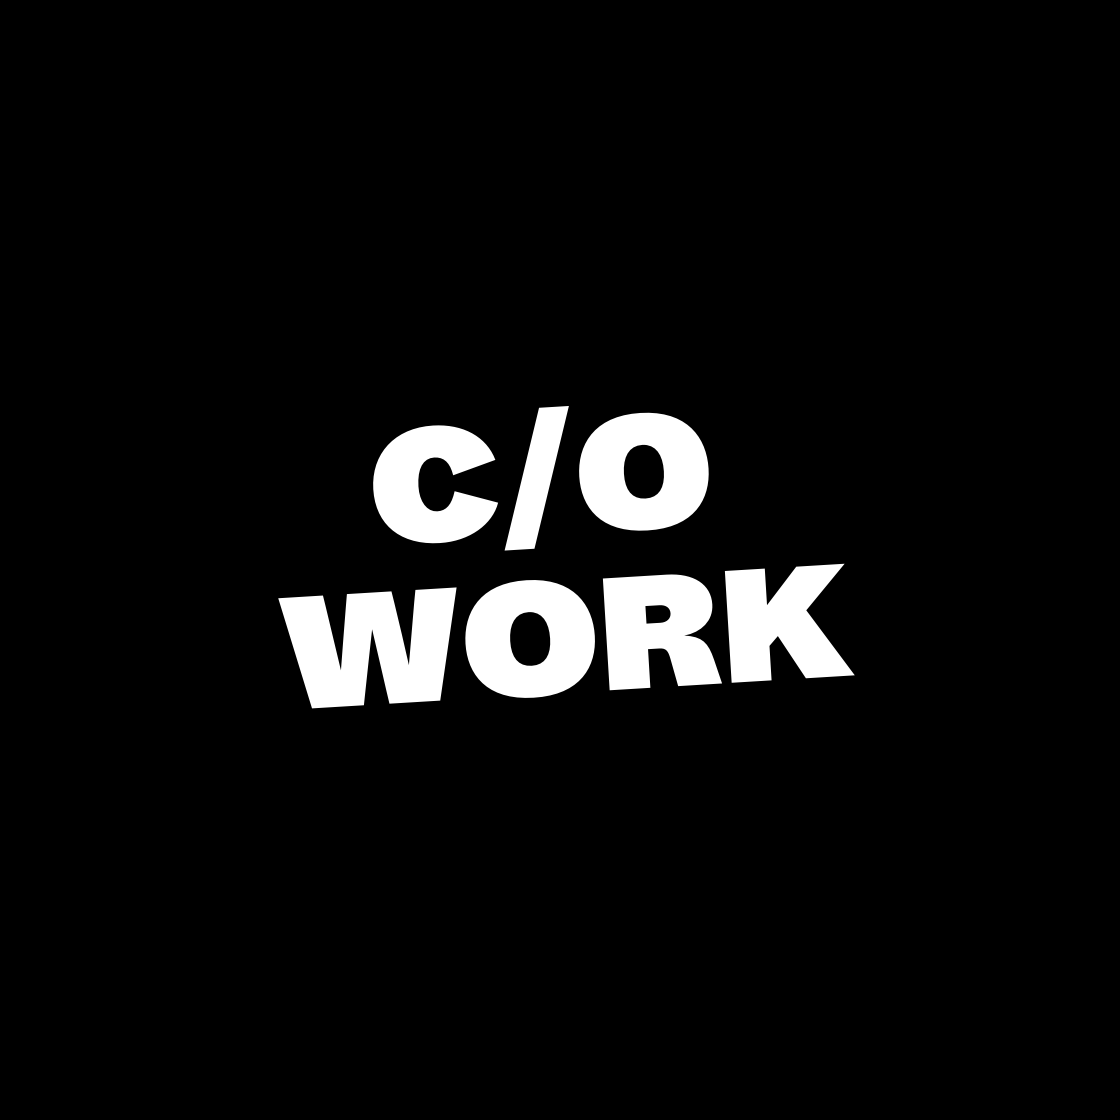 c/o work